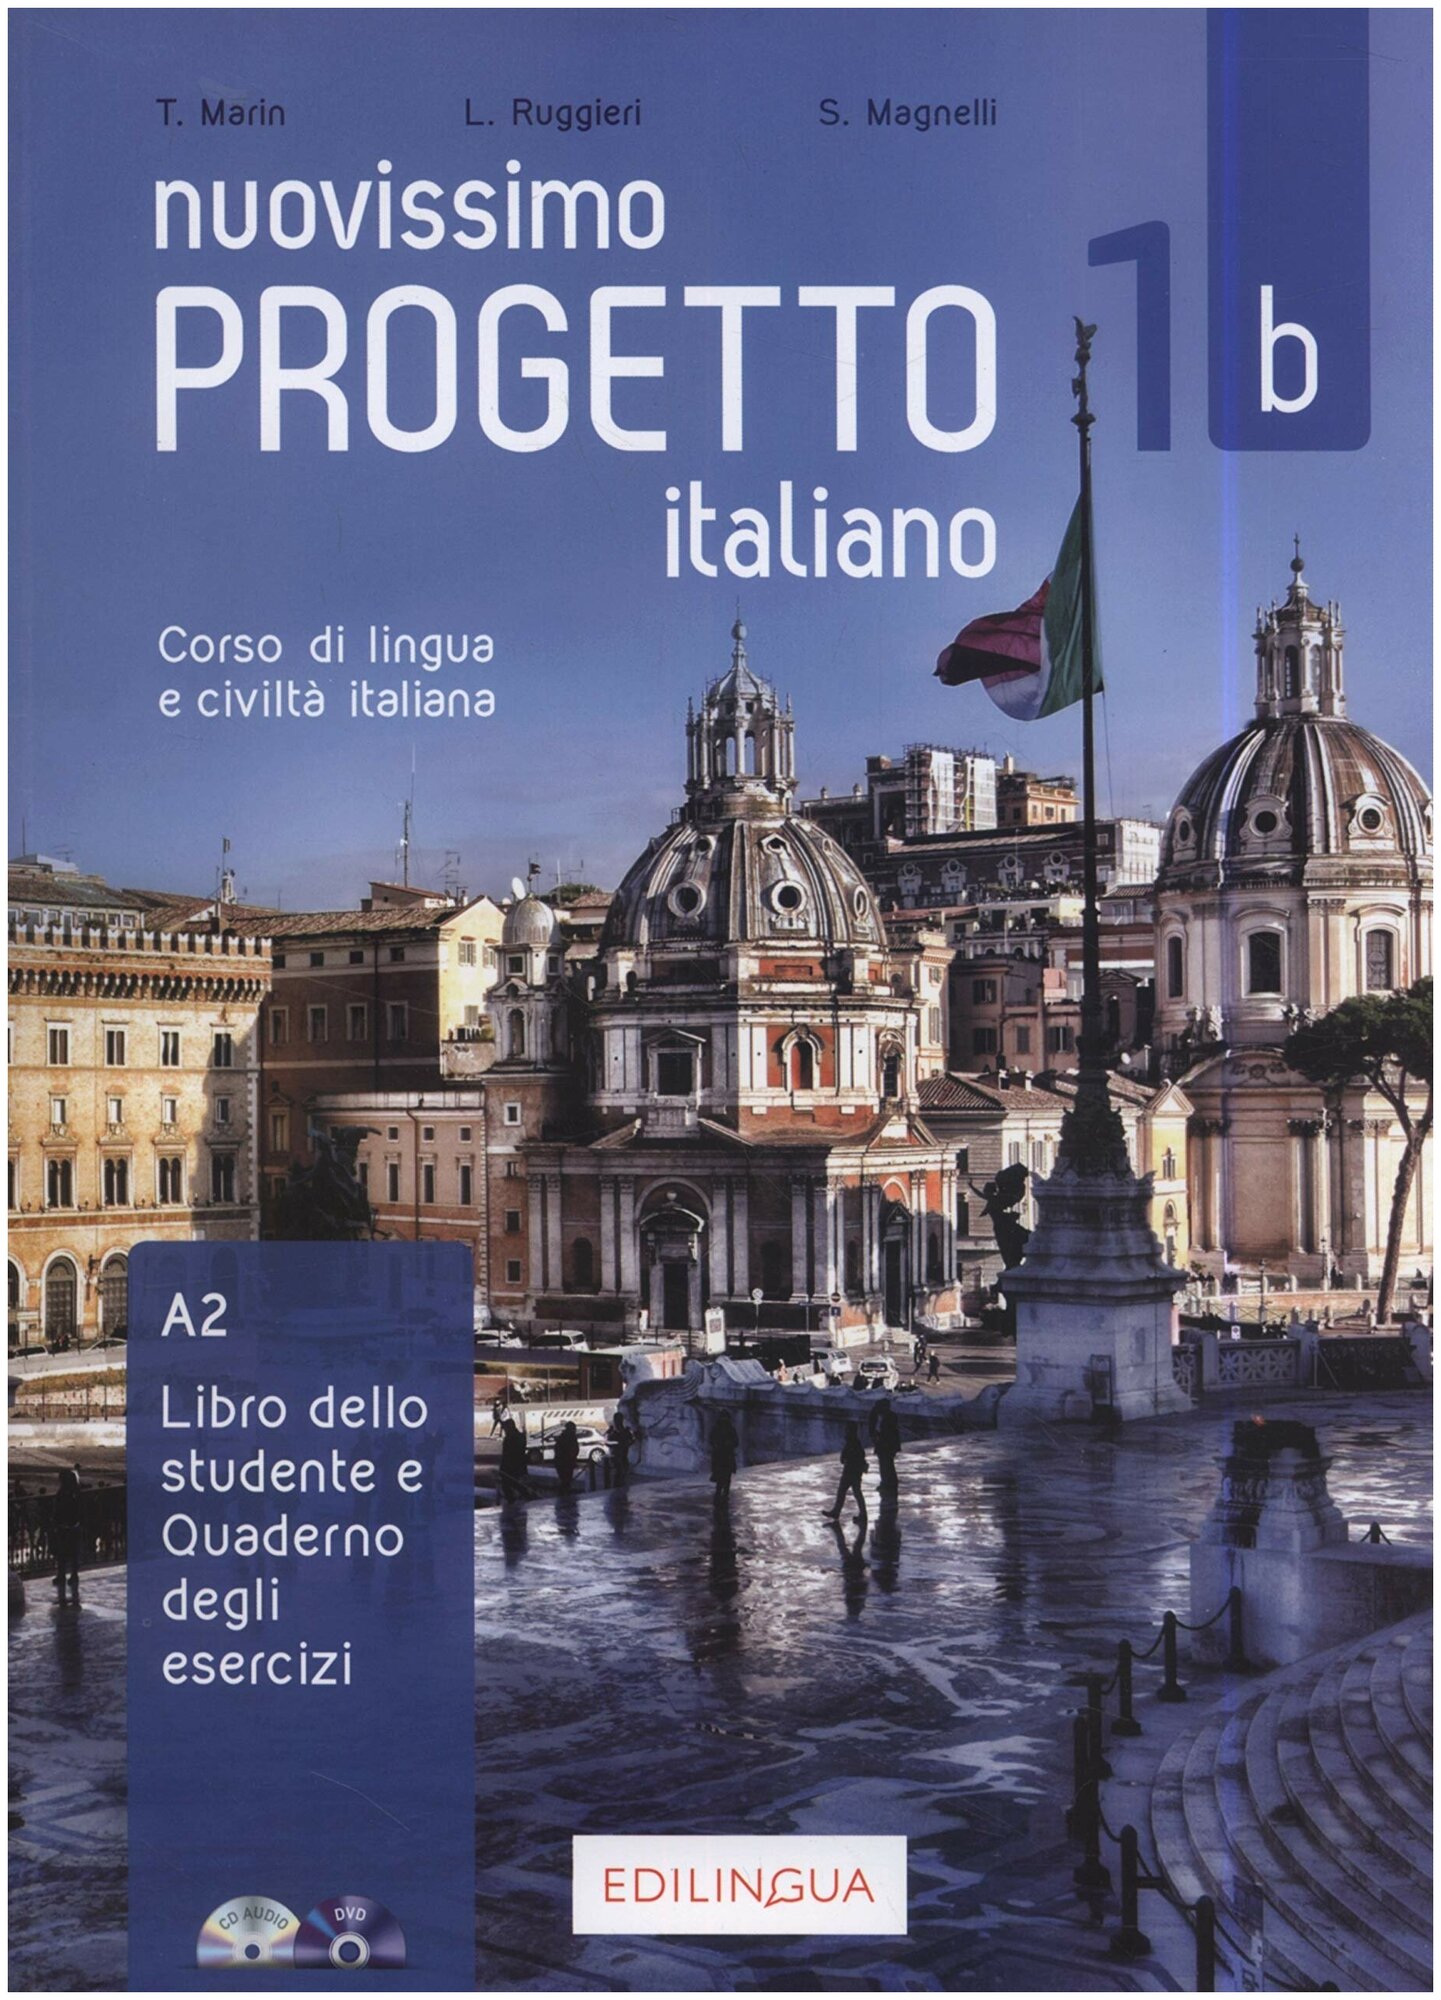 Nuovissimo Progetto italiano 1b. Libro dello studente e Quaderno degli esercizi + audio + video - фото №1